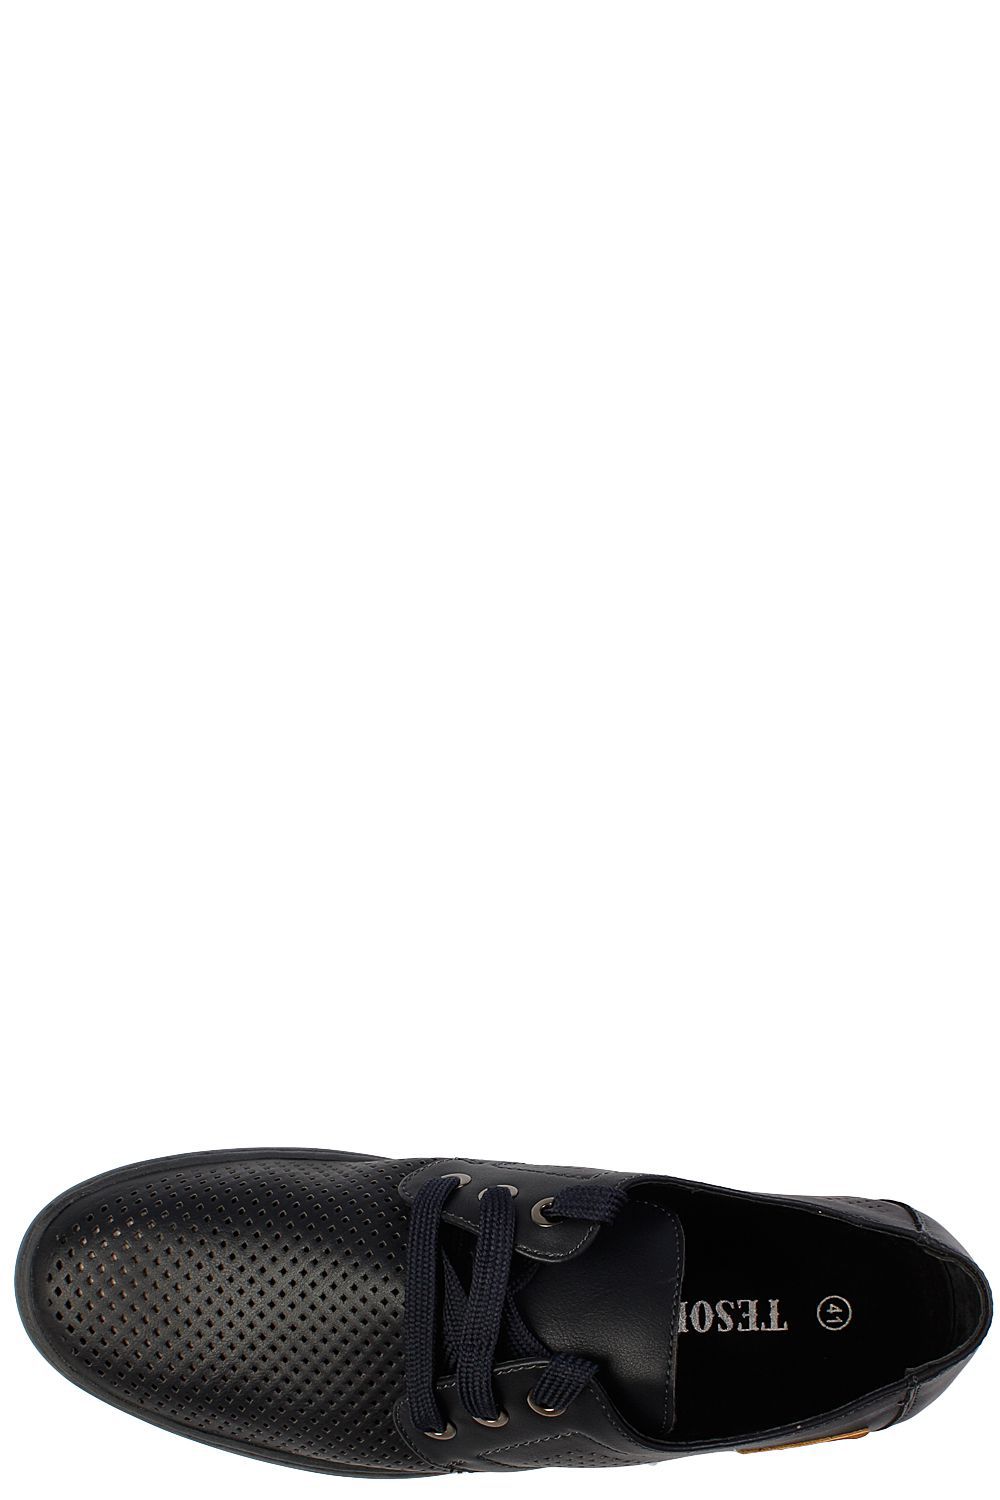 Туфли Tesoro, размер 41, цвет черный - фото 4